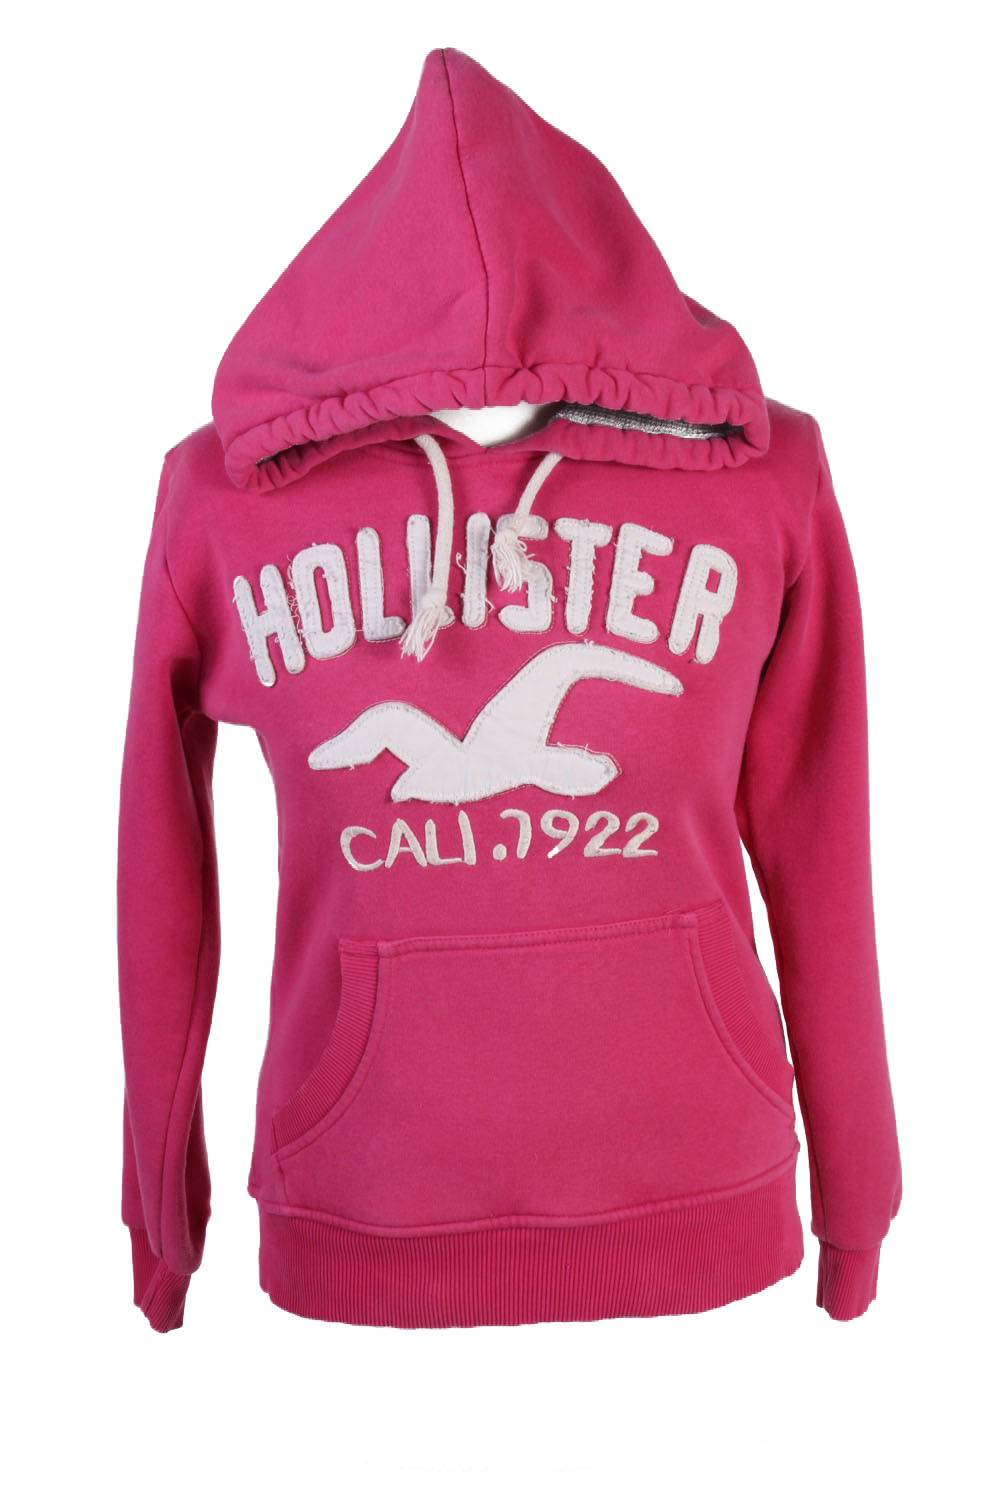 Hollister Hoodie Sweatshirt Top Womens Pink M - Pepper Tree London